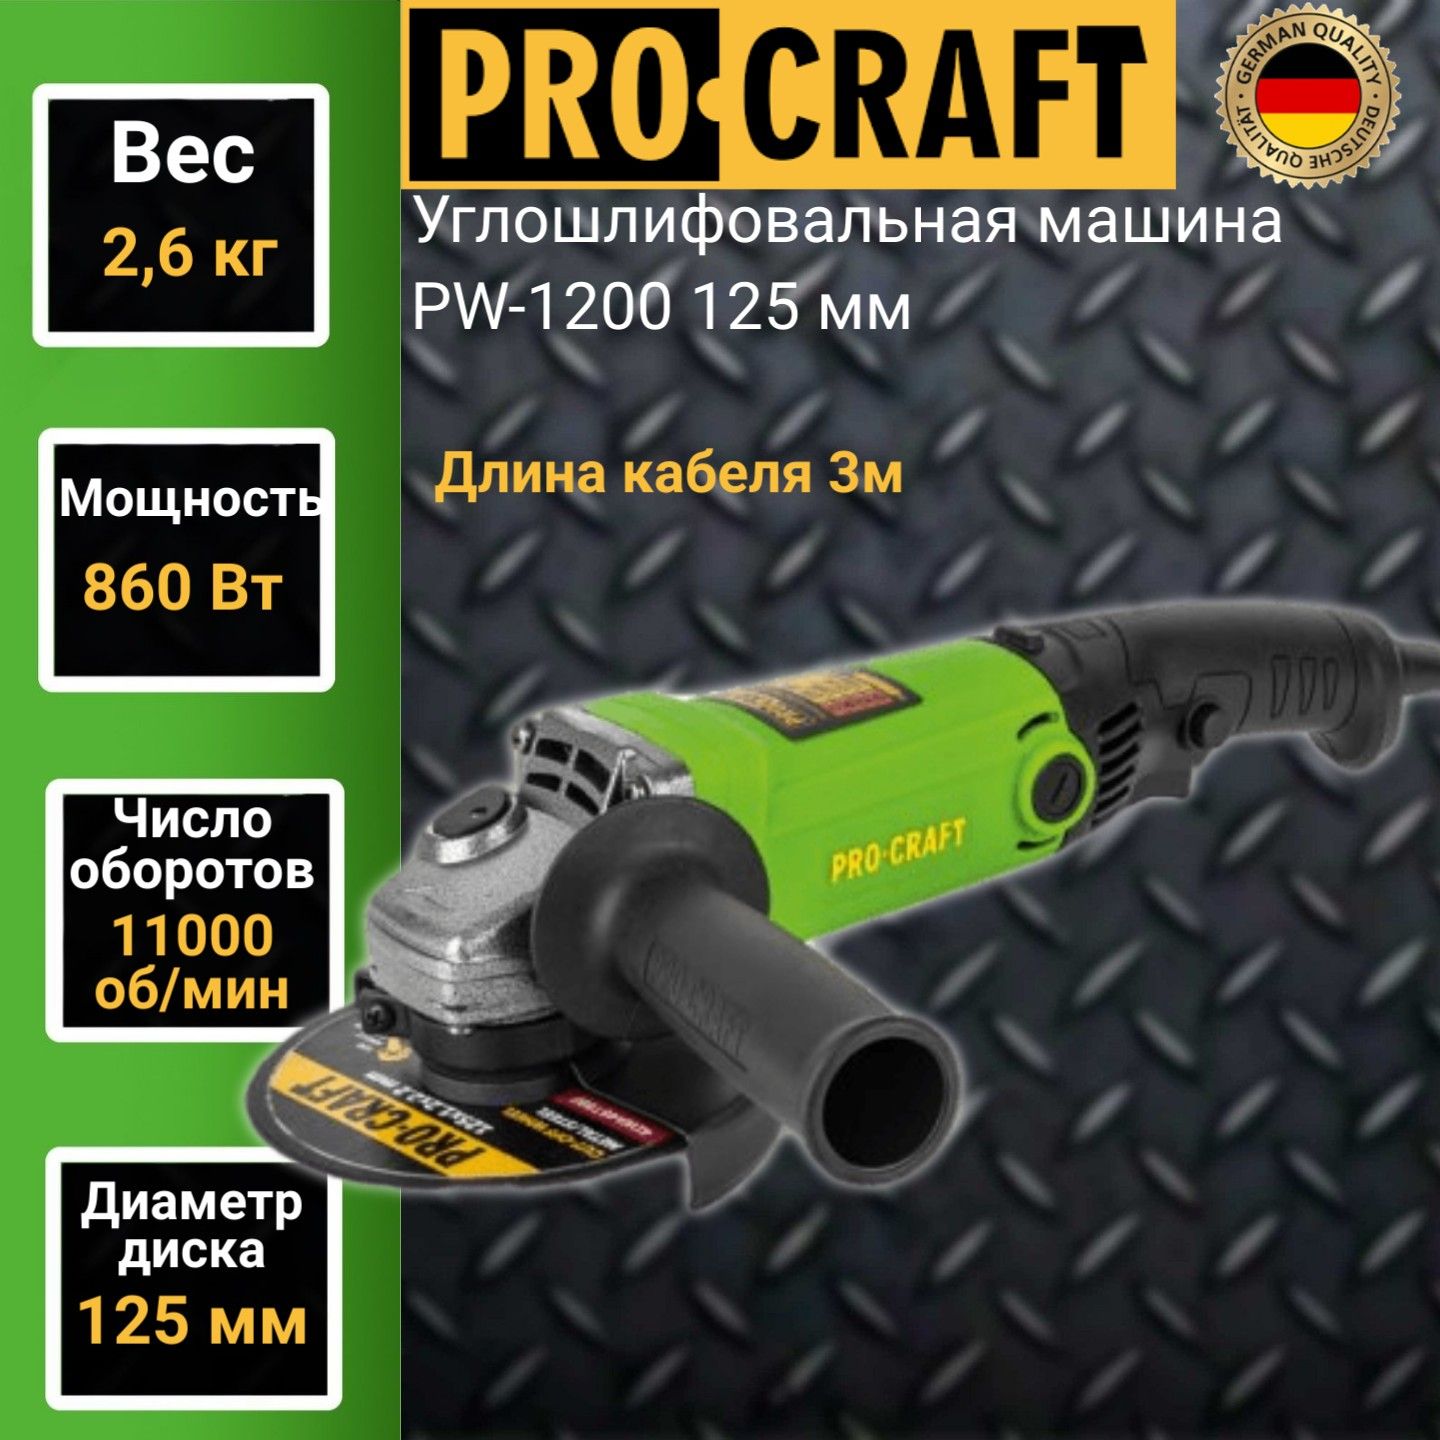 Углошлифовальная машина болгарка Procraft PW1200, 125мм круг, 860Вт, 11000об/мин углошлифовальная машина ушм 150 1300 ресанта болгарка